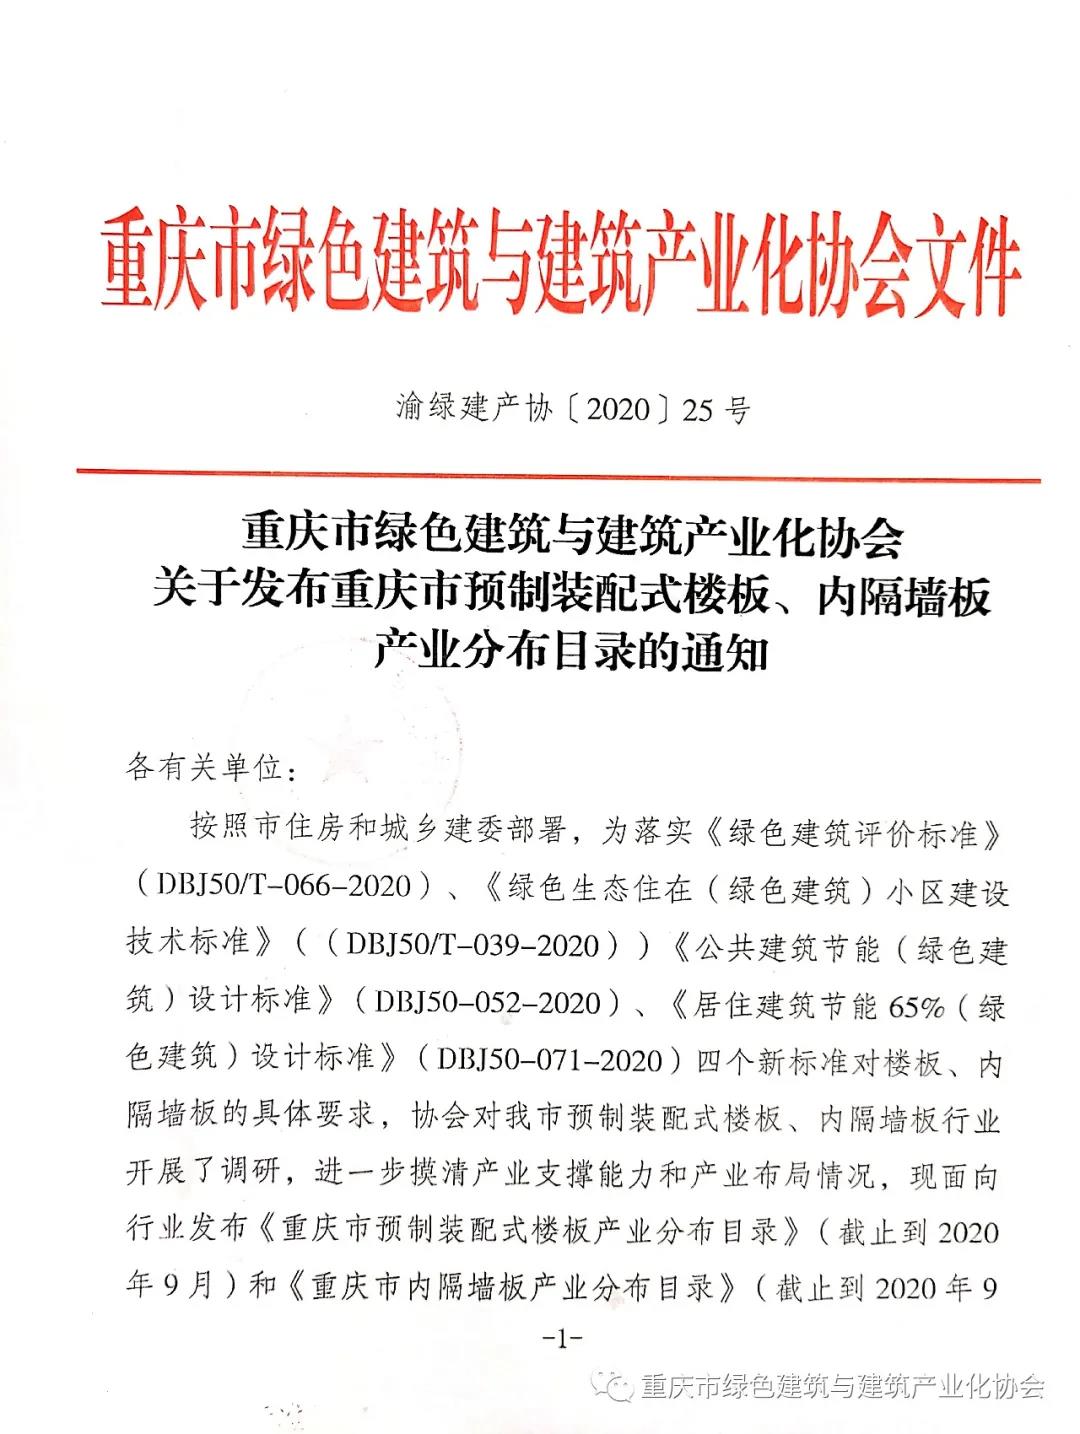 米乐m6
产品列入重庆市预制装配式楼板、内隔墙板产业分布目录